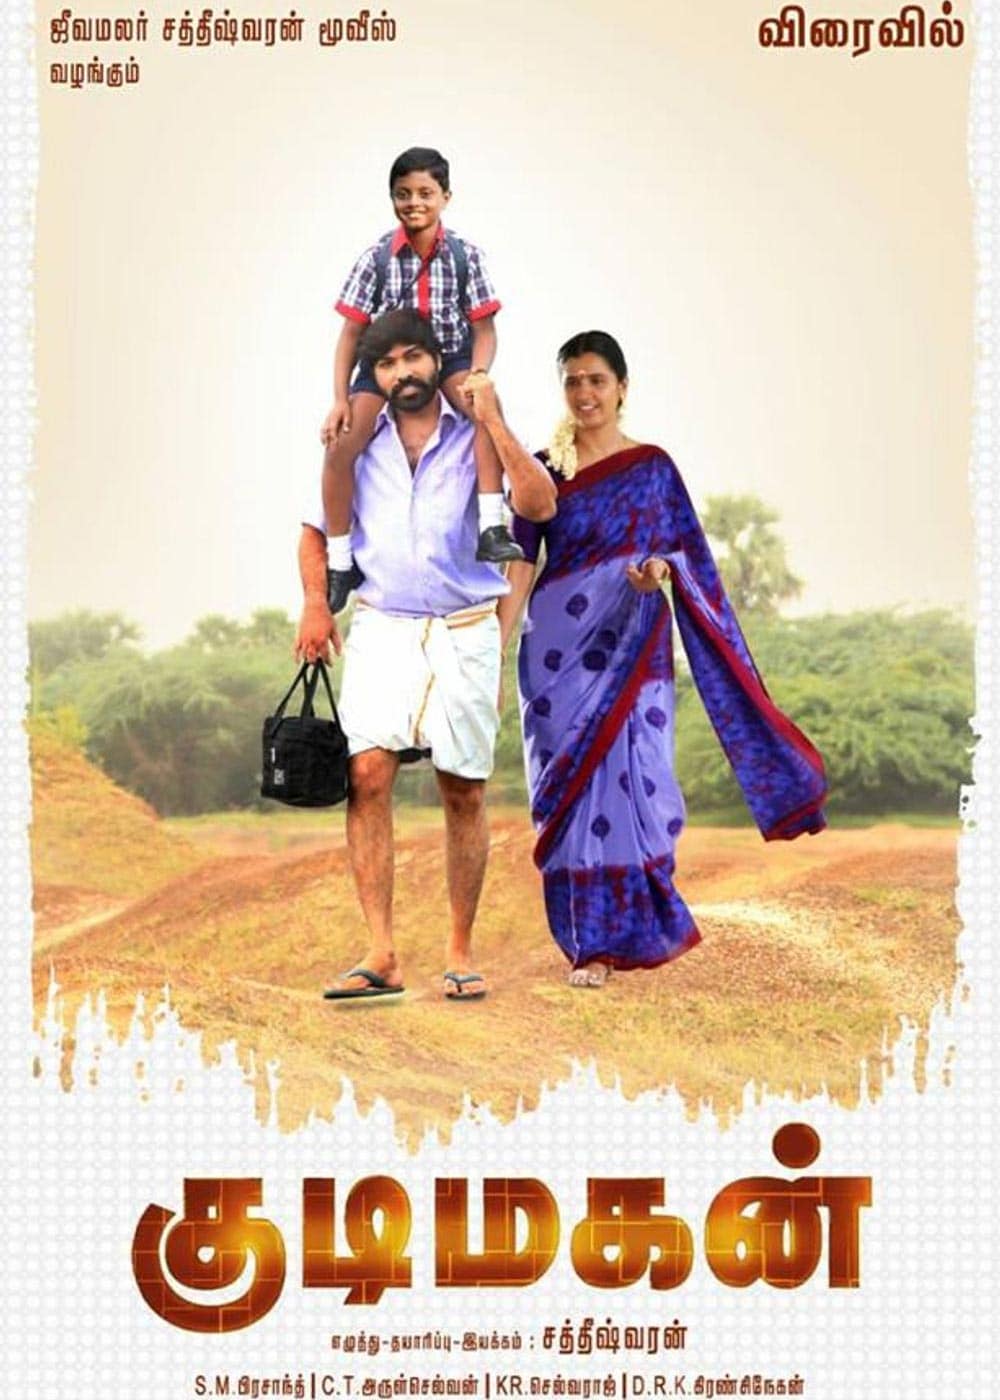 tamil kudimagan movie review tamil